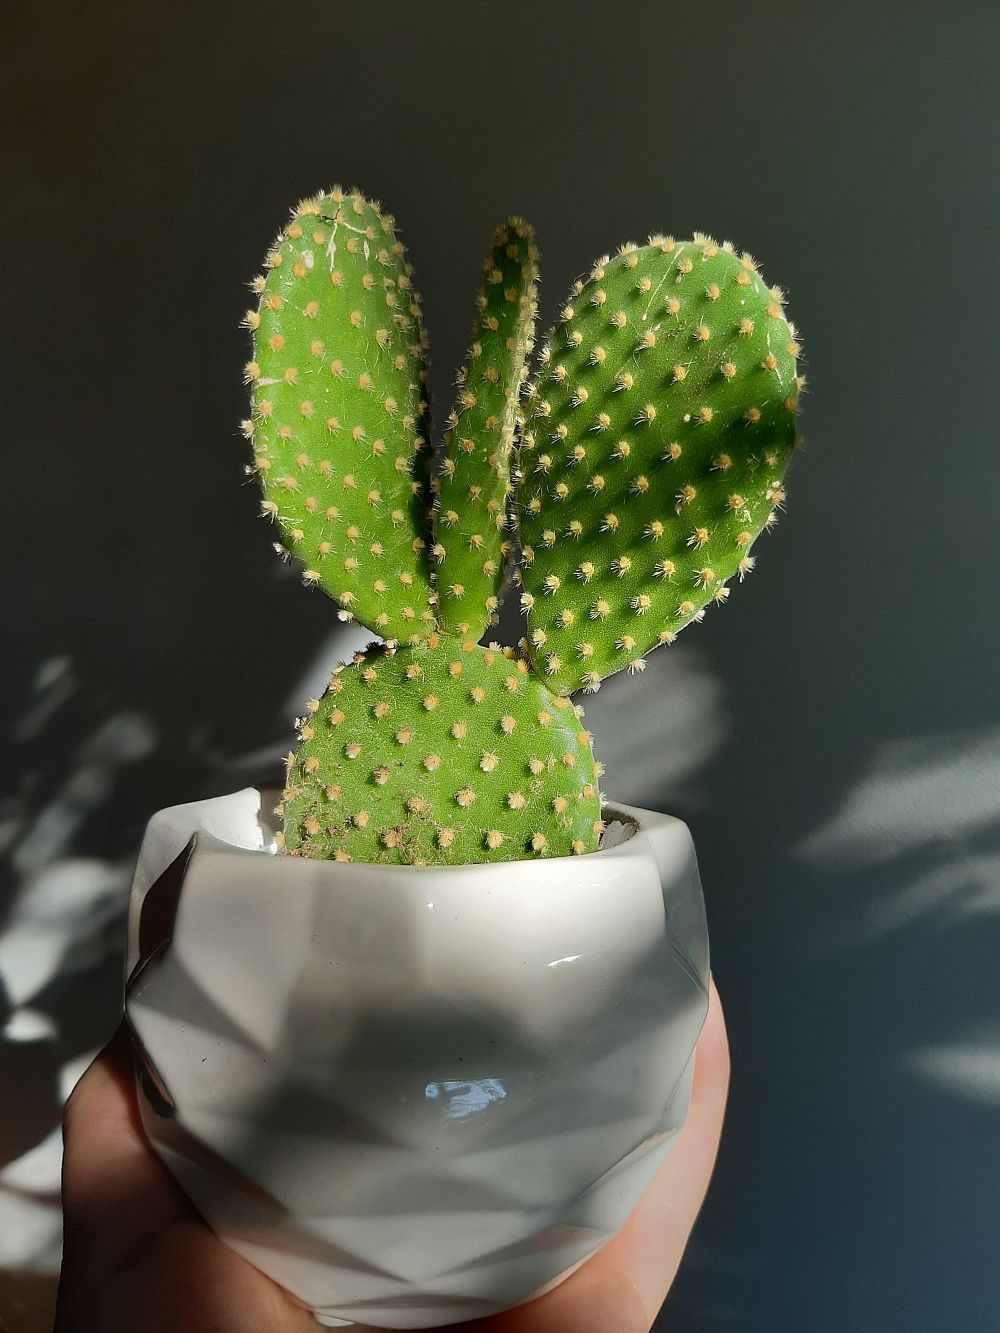 Bunny ear cactus